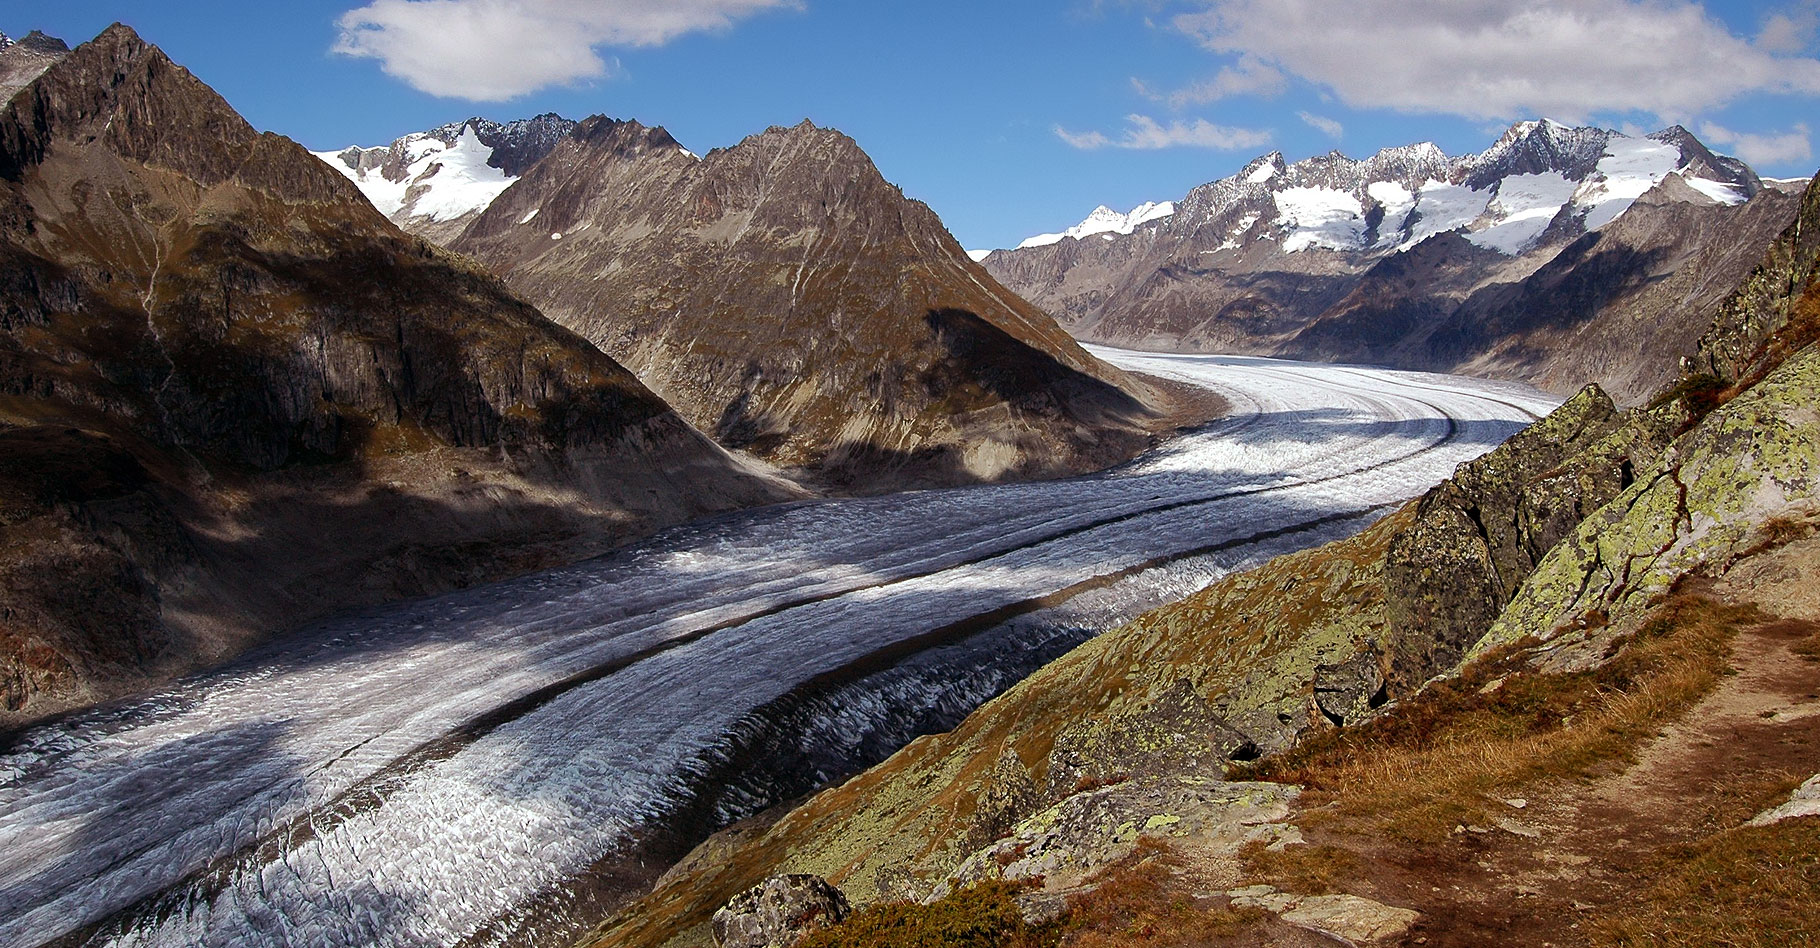 Le glacier Aletsch,&nbsp;le plus grand glacier des Alpes, est&nbsp;situé dans le Valais.&nbsp;© Cristina Del Biaggio -&nbsp;CC BY-SA 3.0